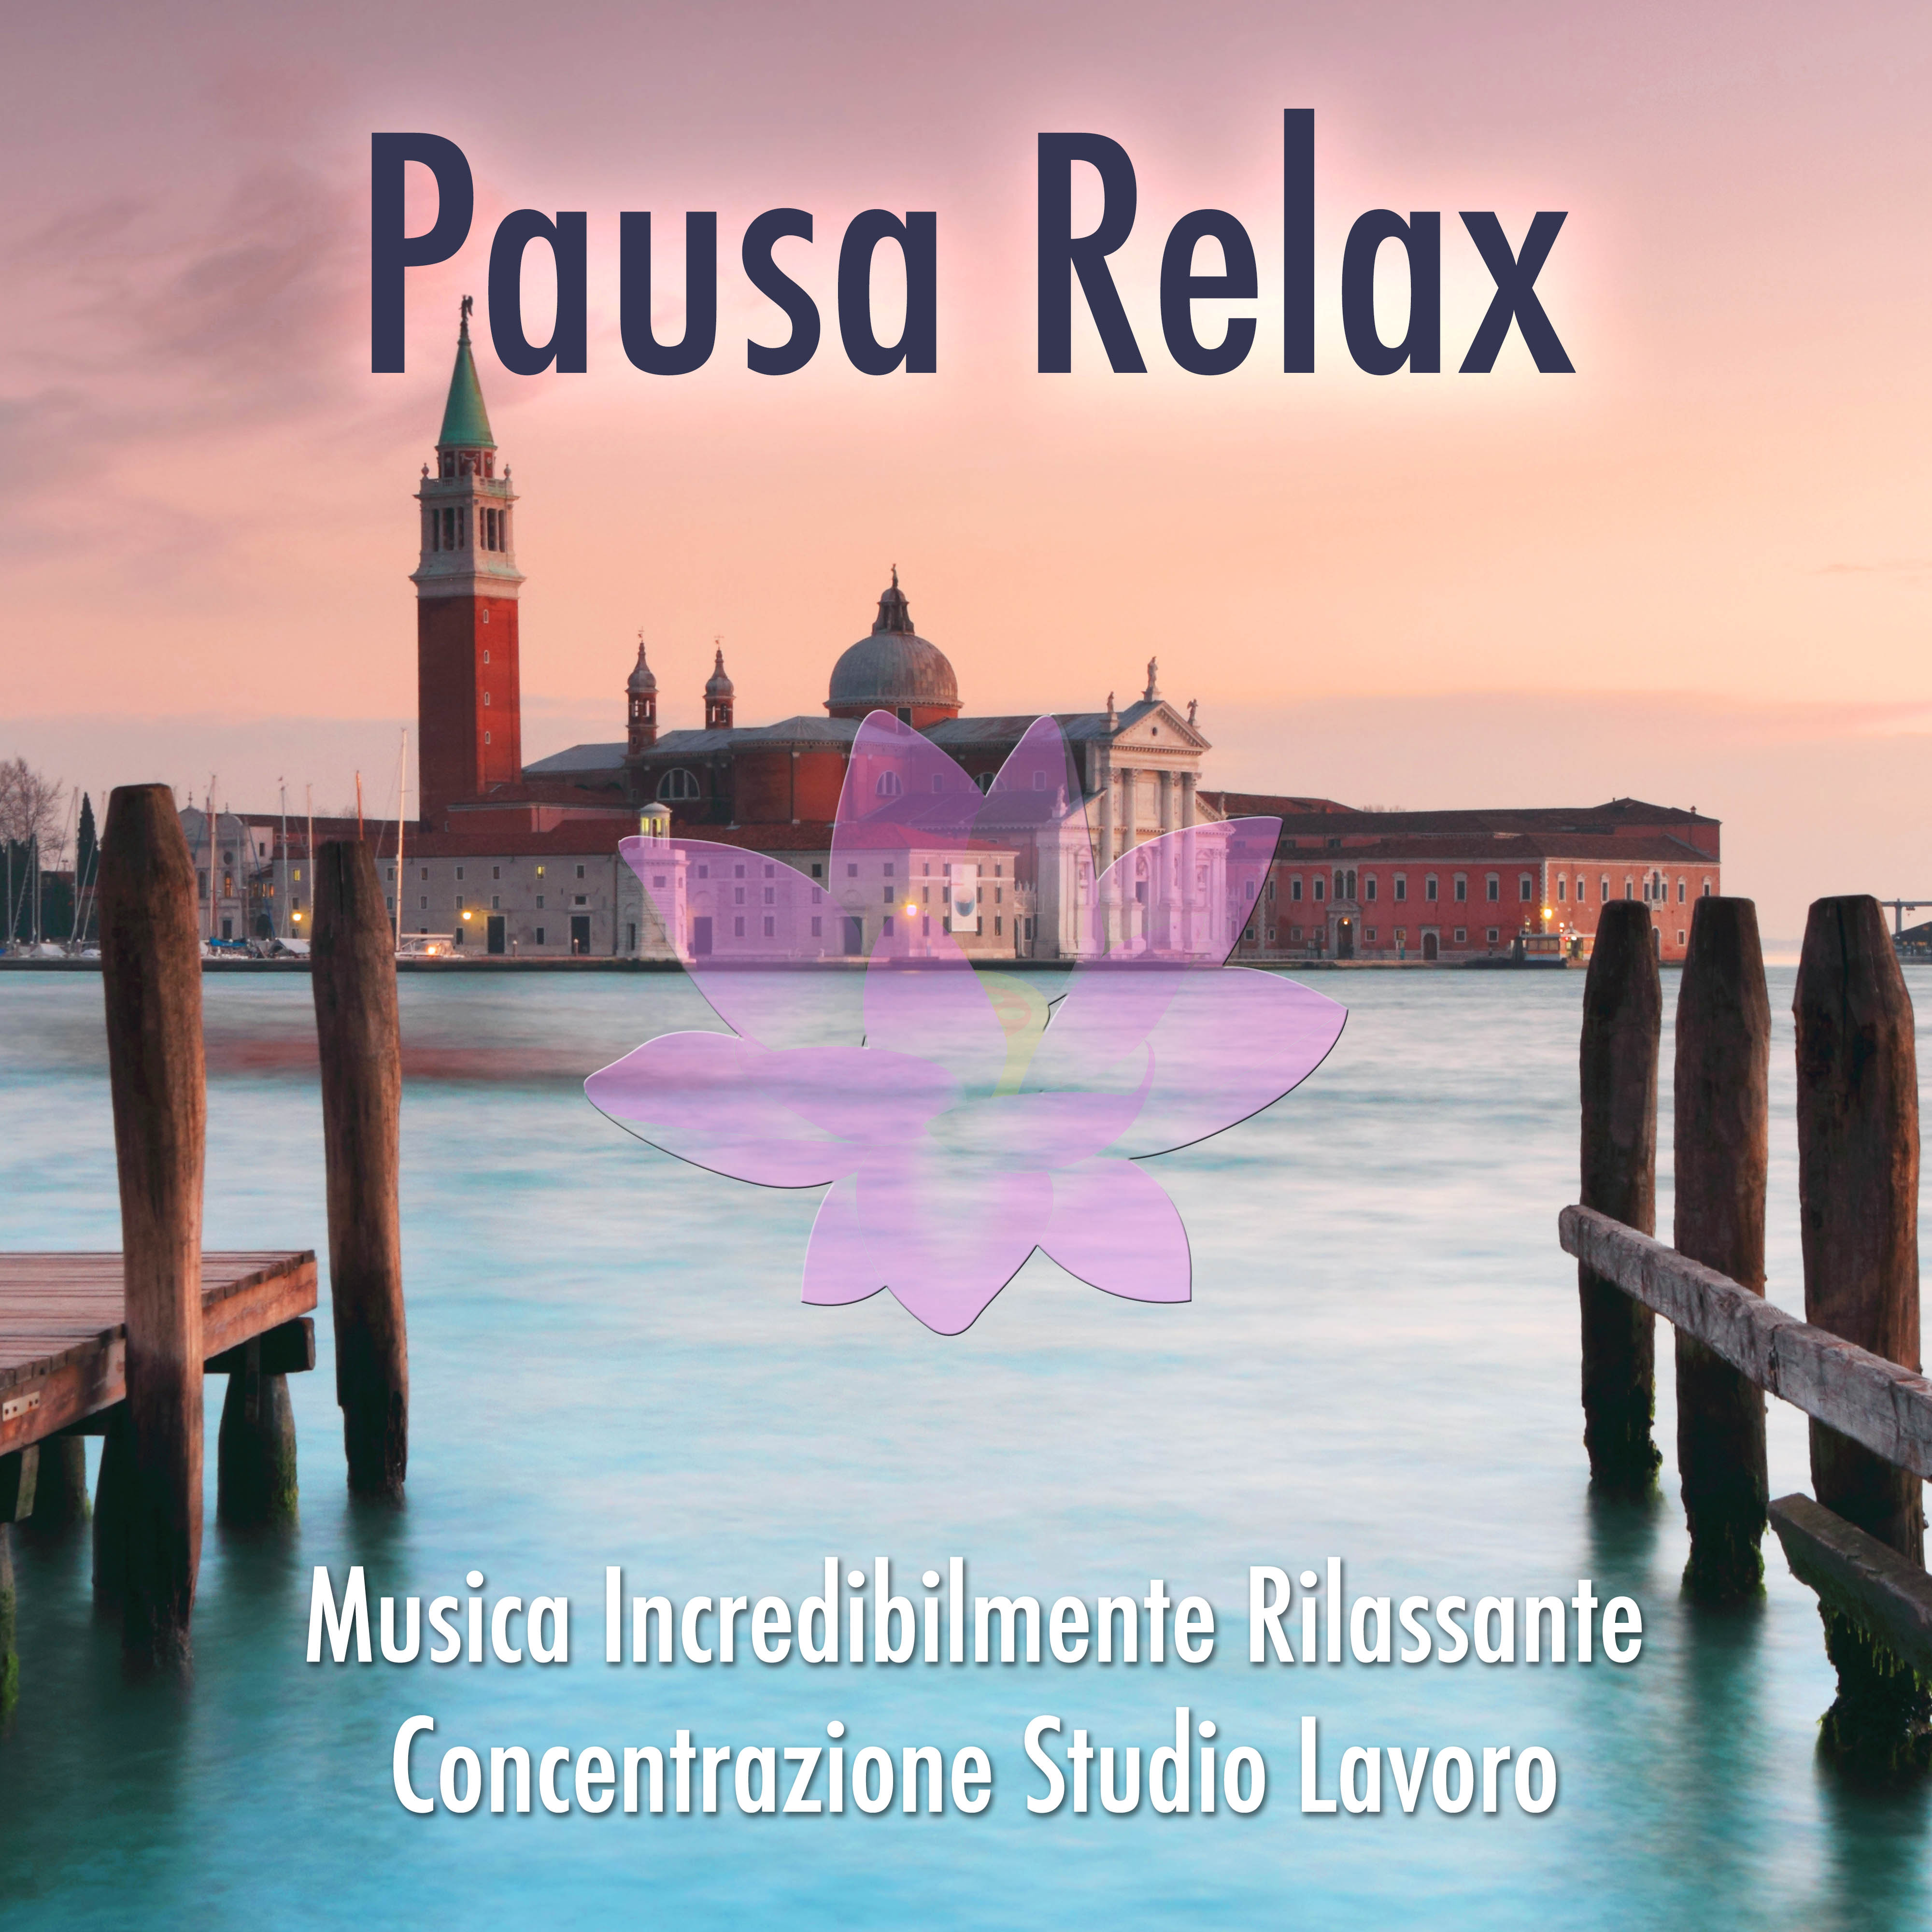 Pausa Relax: Musica Italiana Incredibilmente Rilassante per la Concentrazione, per Studiare o per Lavorare